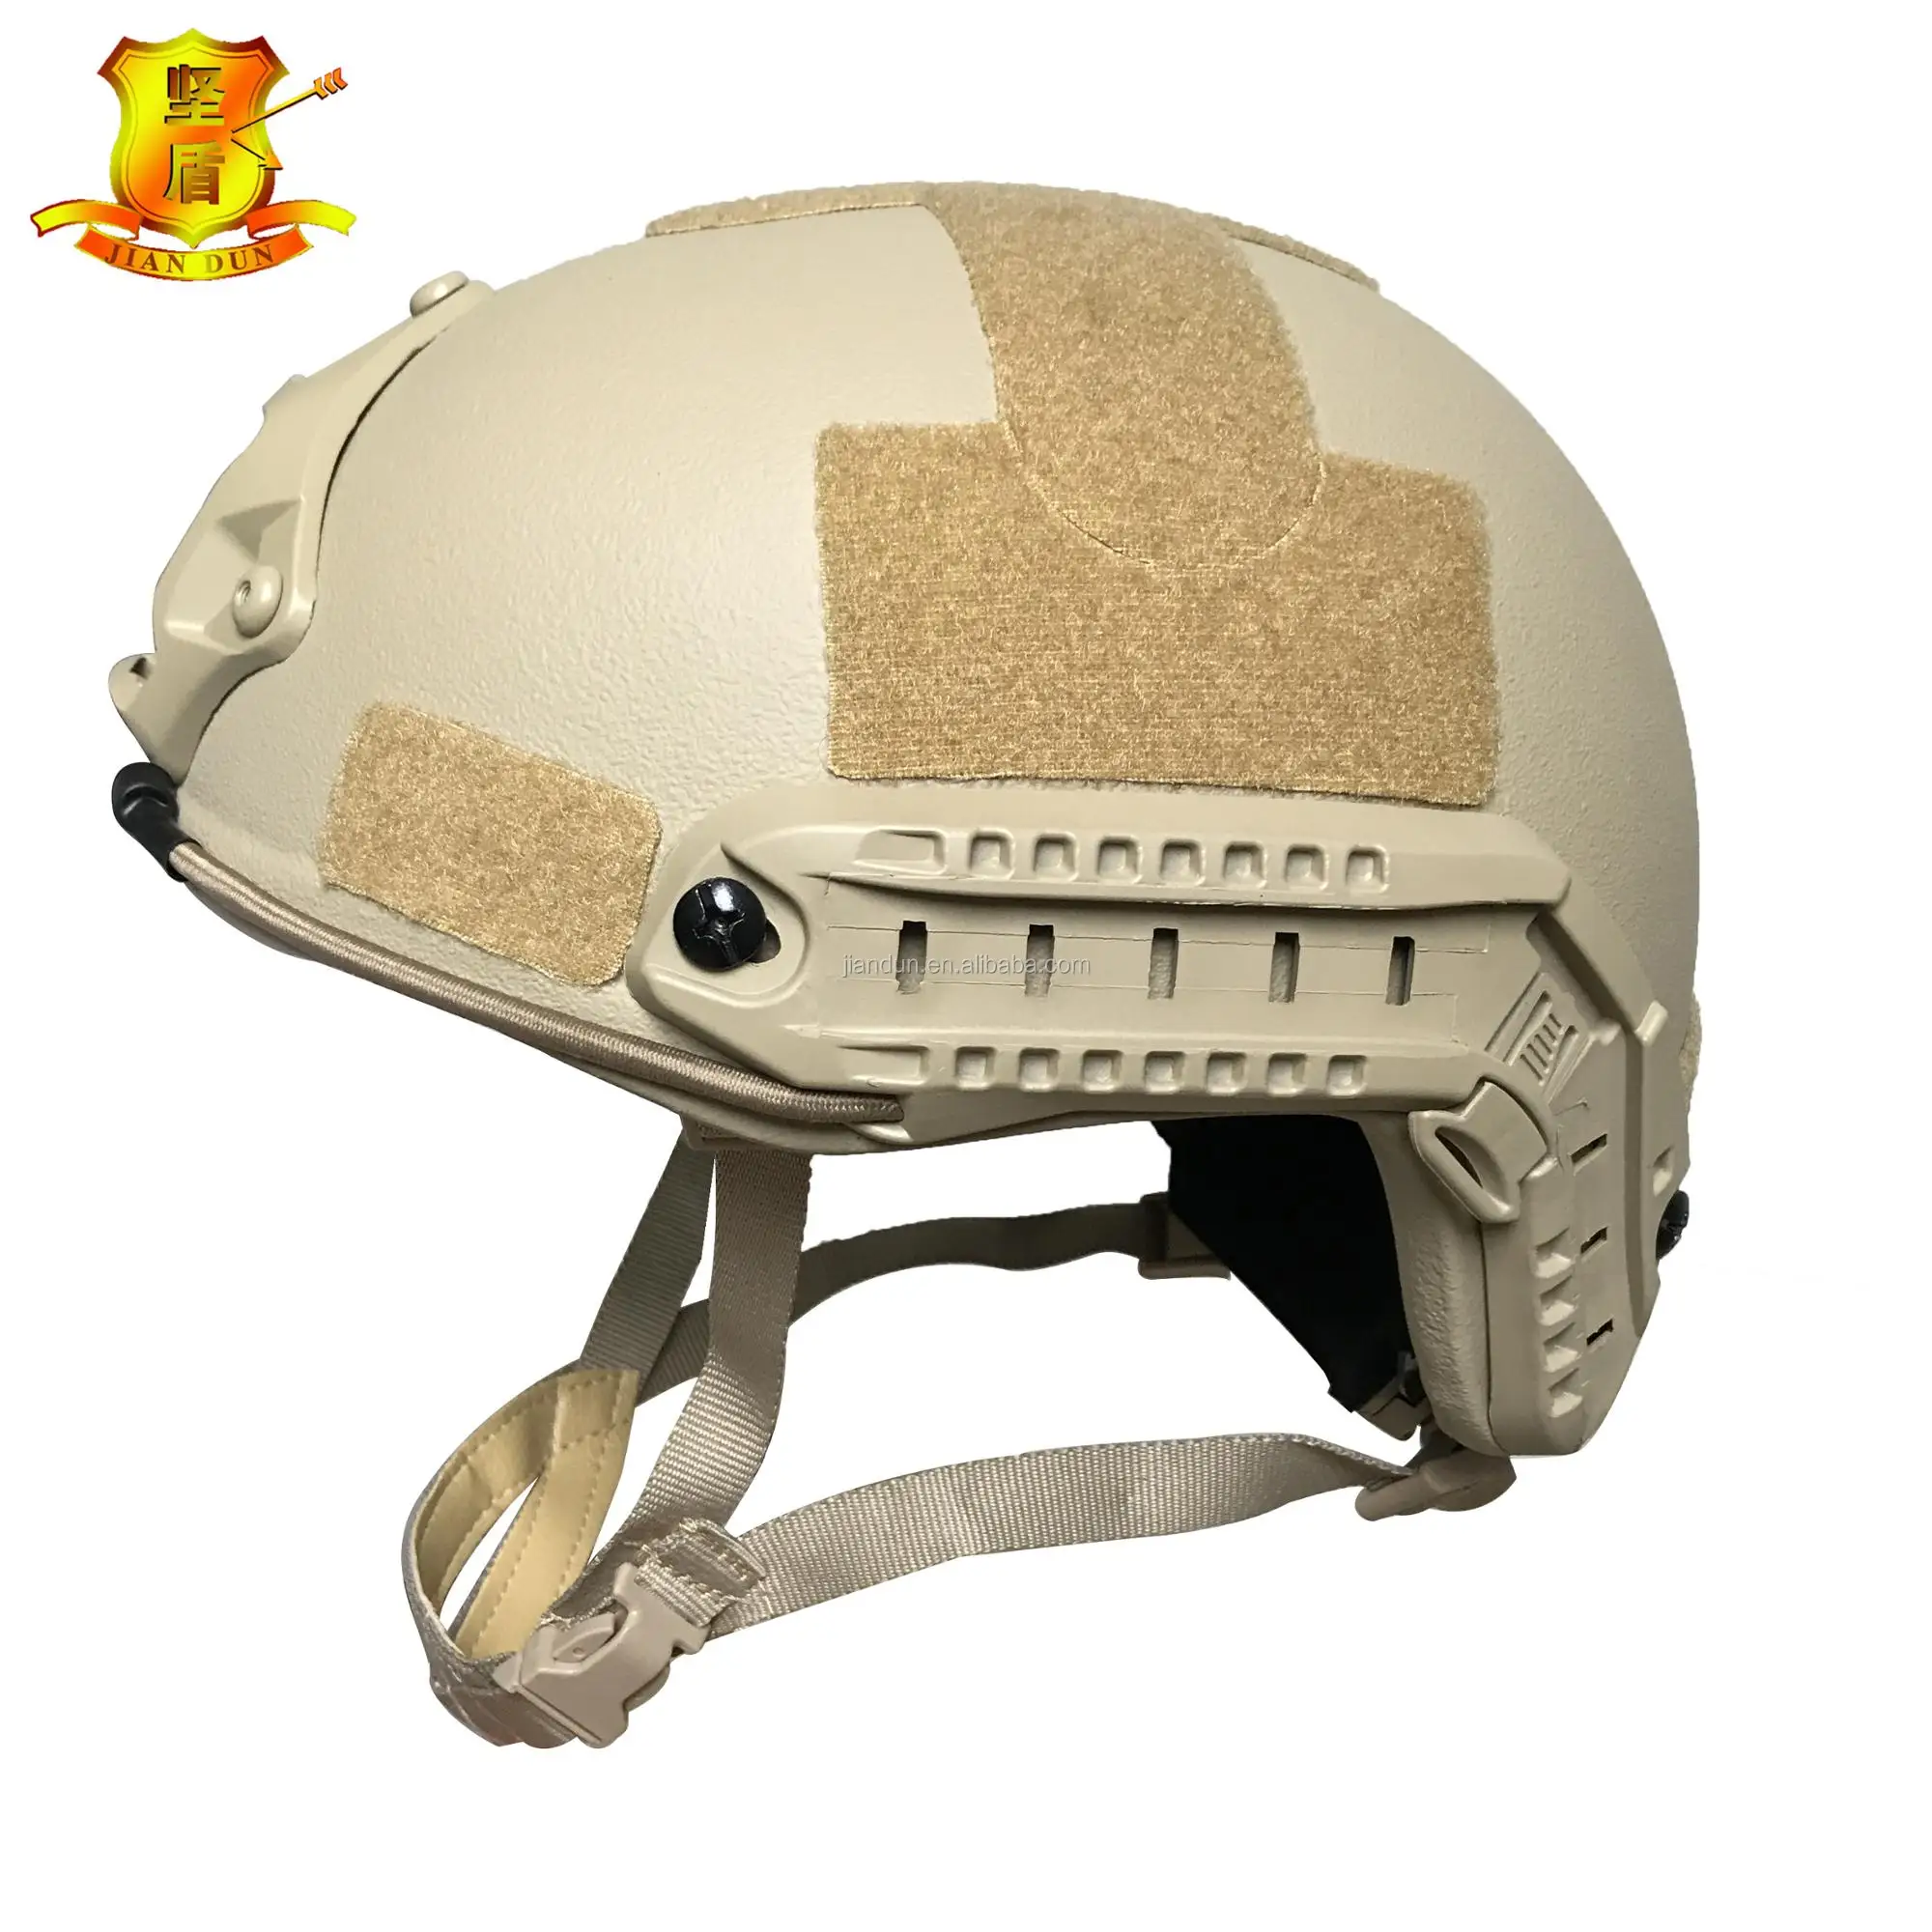 所有行业  安全防护  警军用品  防弹头盔  产品描述 快速样式防弹